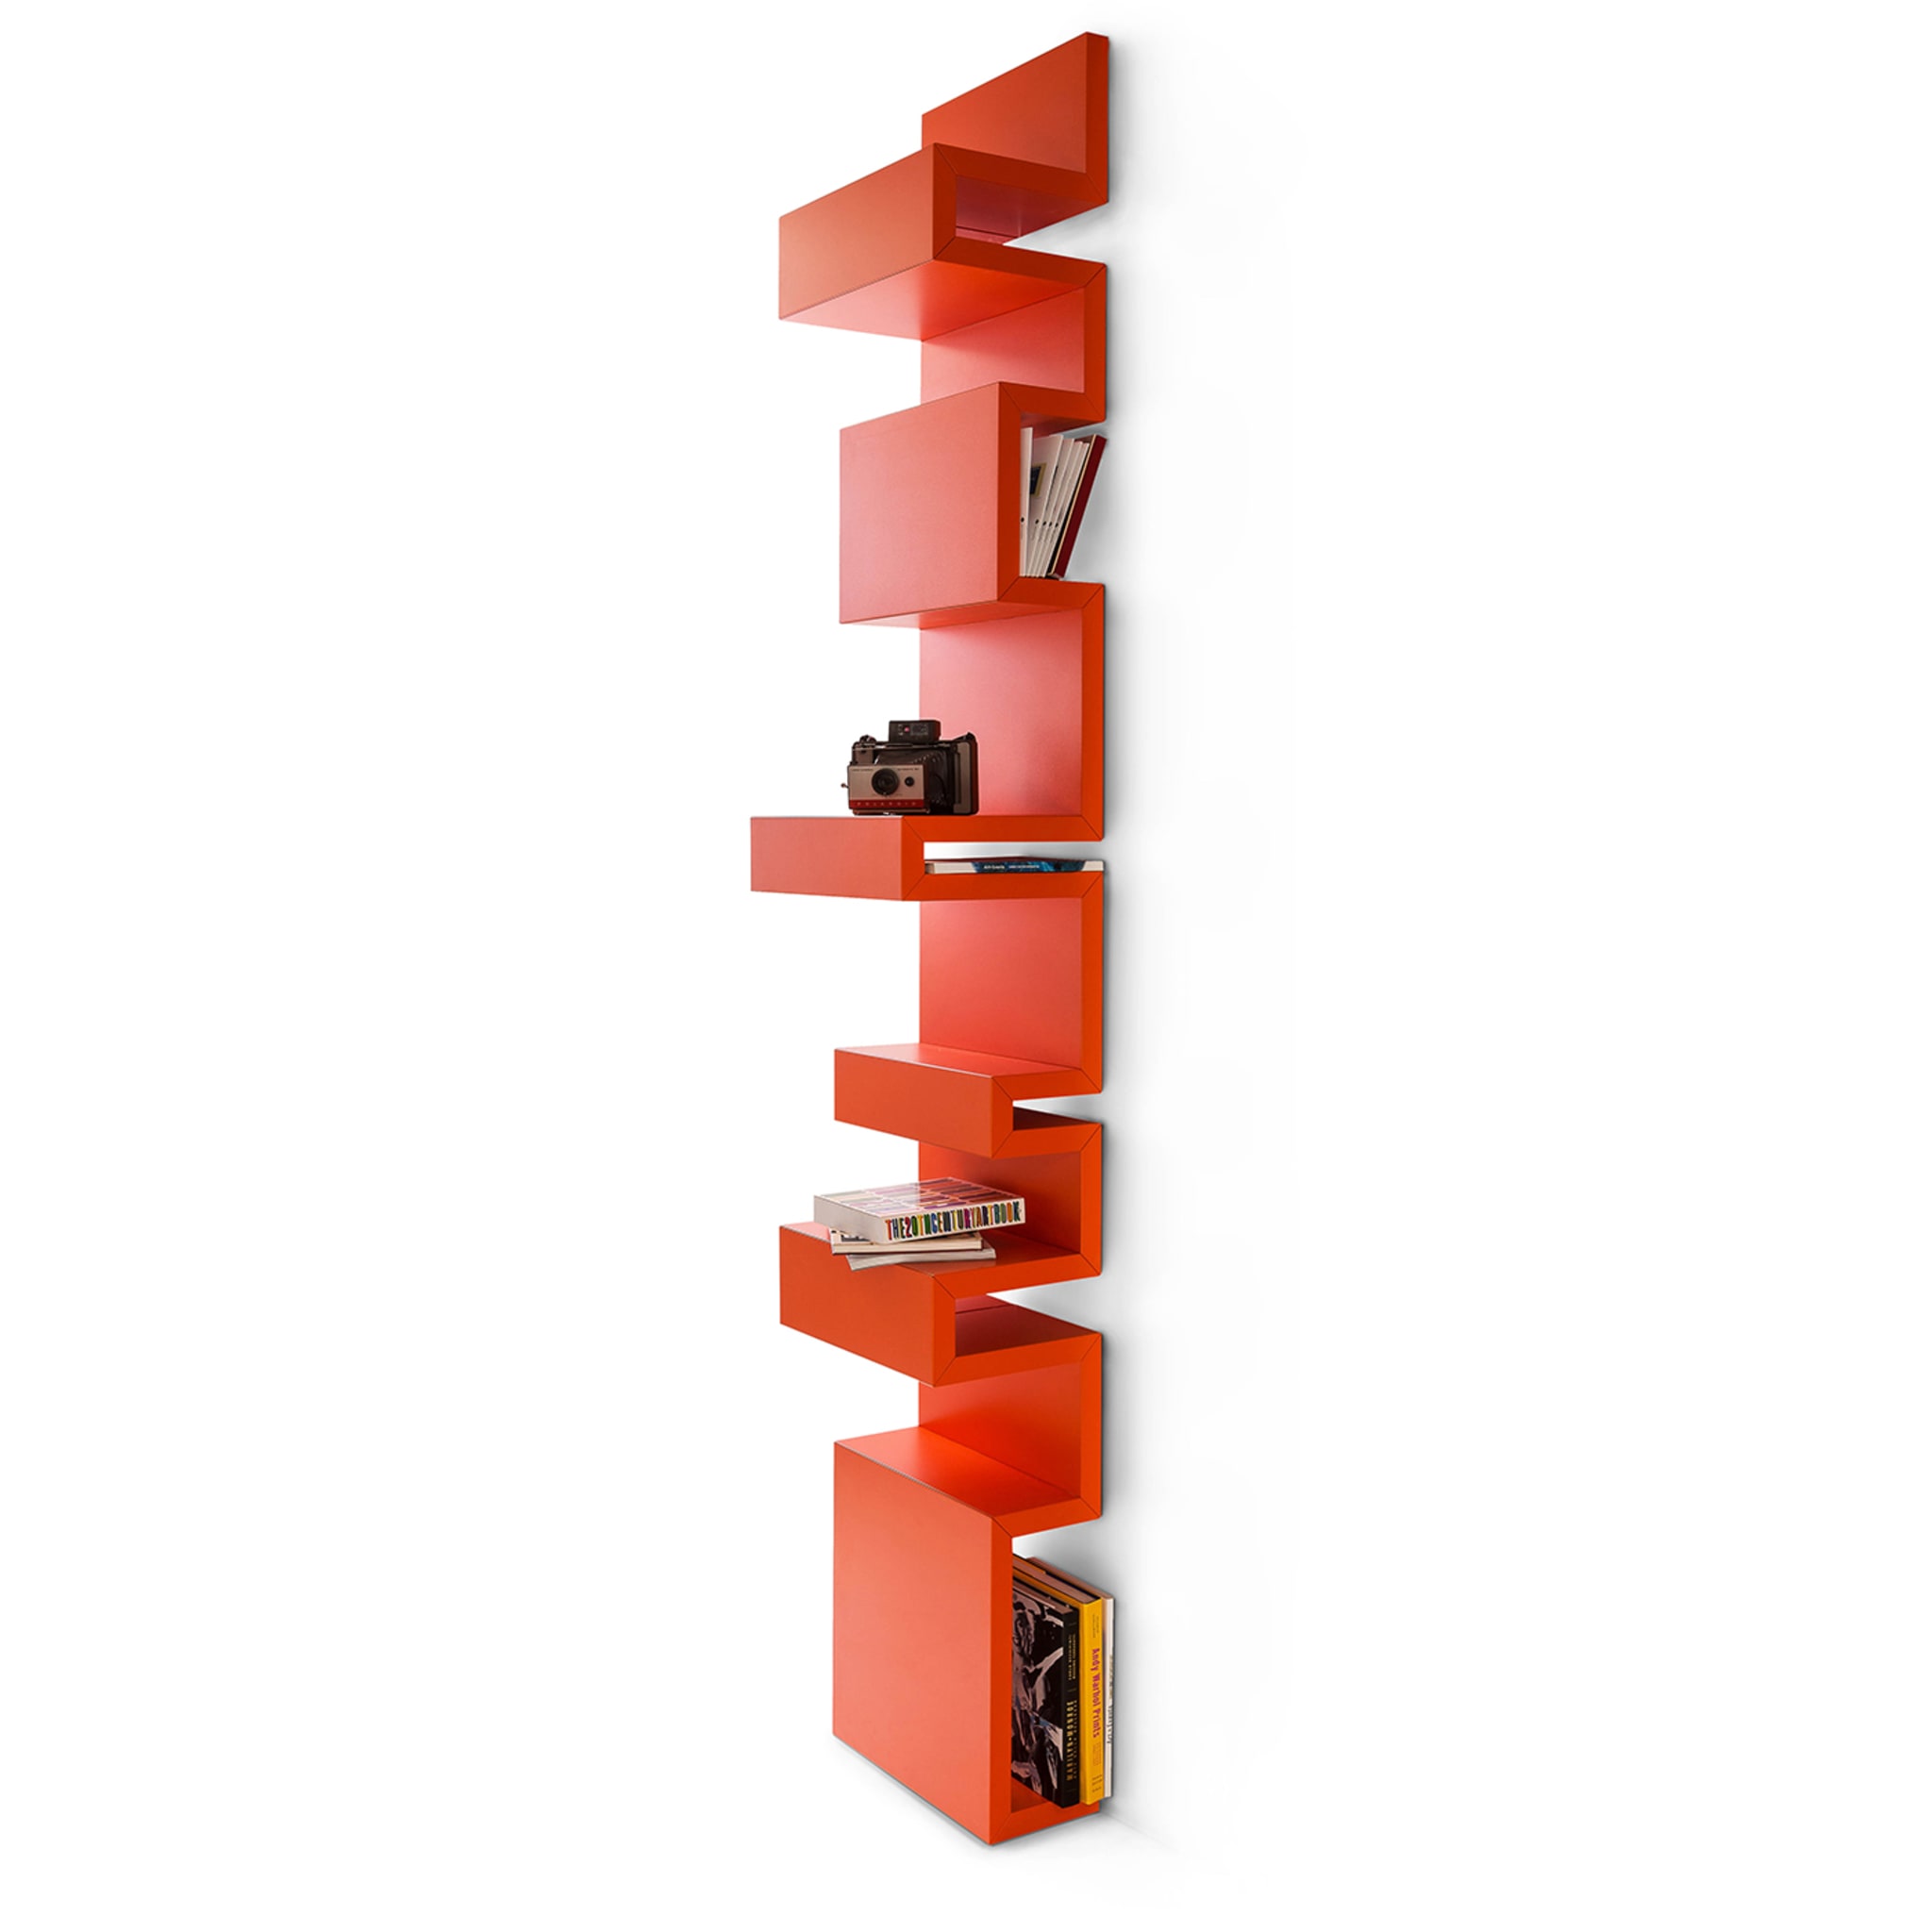 Todo Orange Wall Bookcase by Giulia Contaldo - Alternative view 3